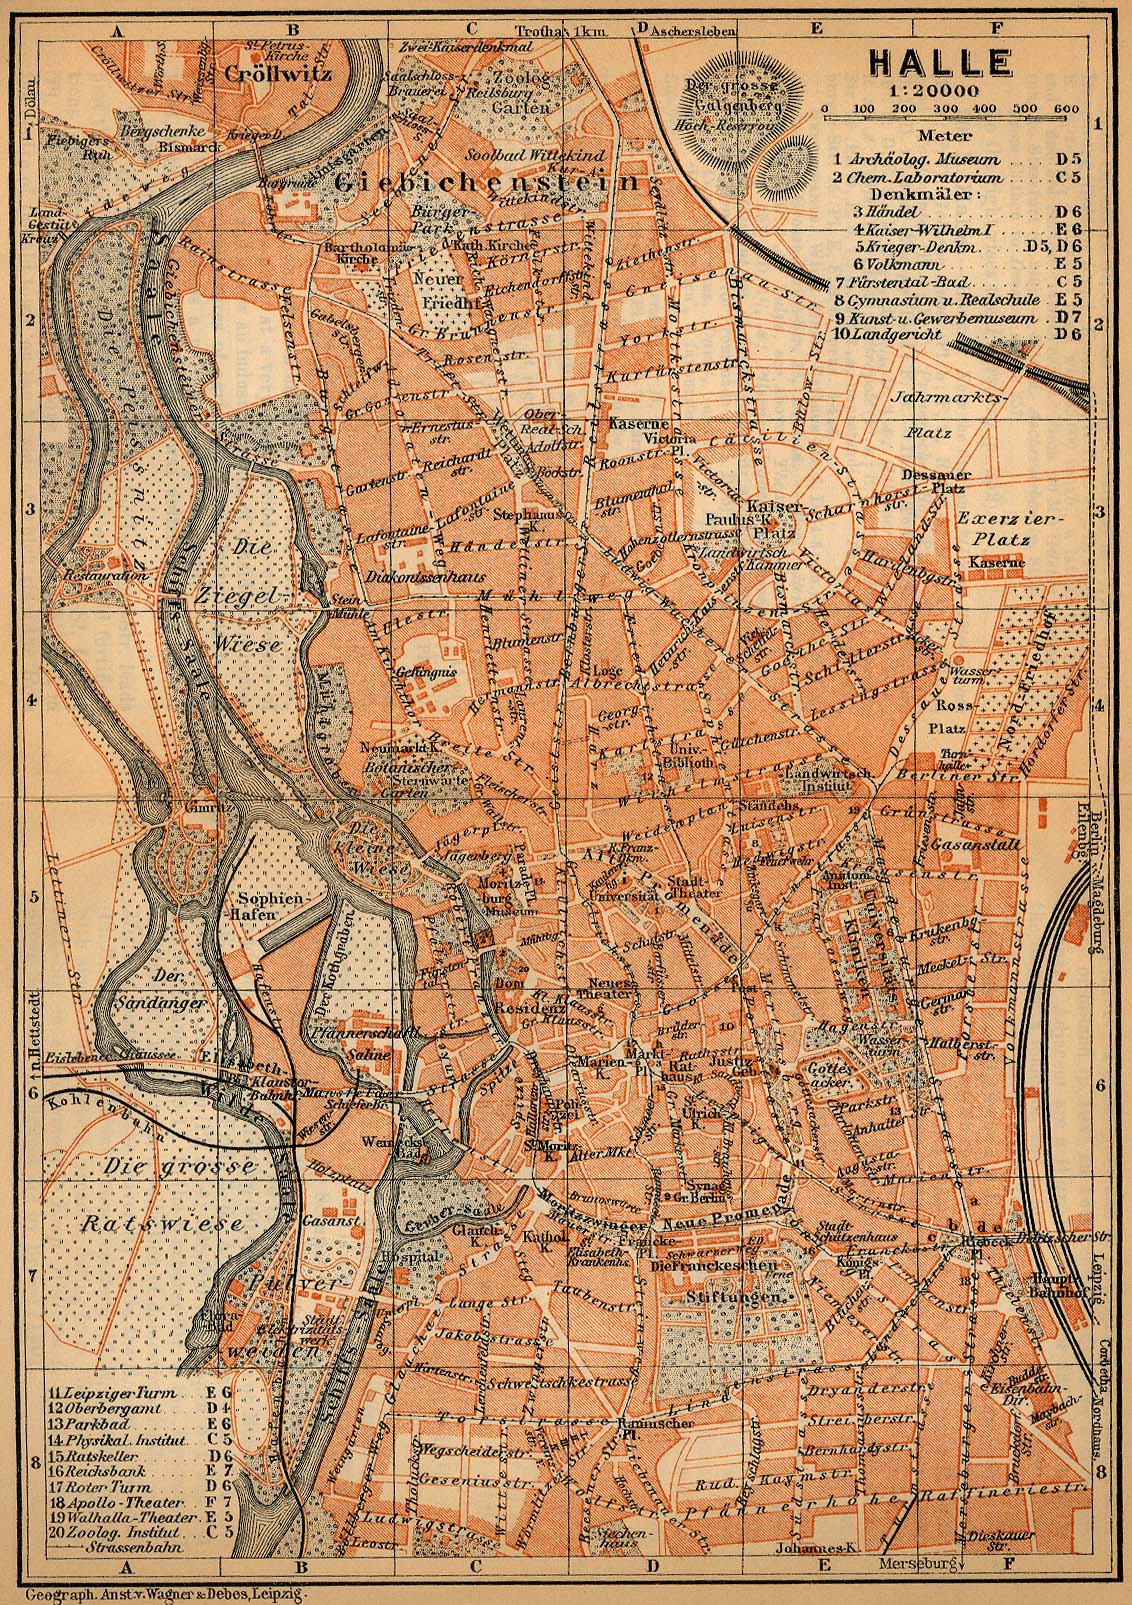 Mapa de Halle, Alemania 1910